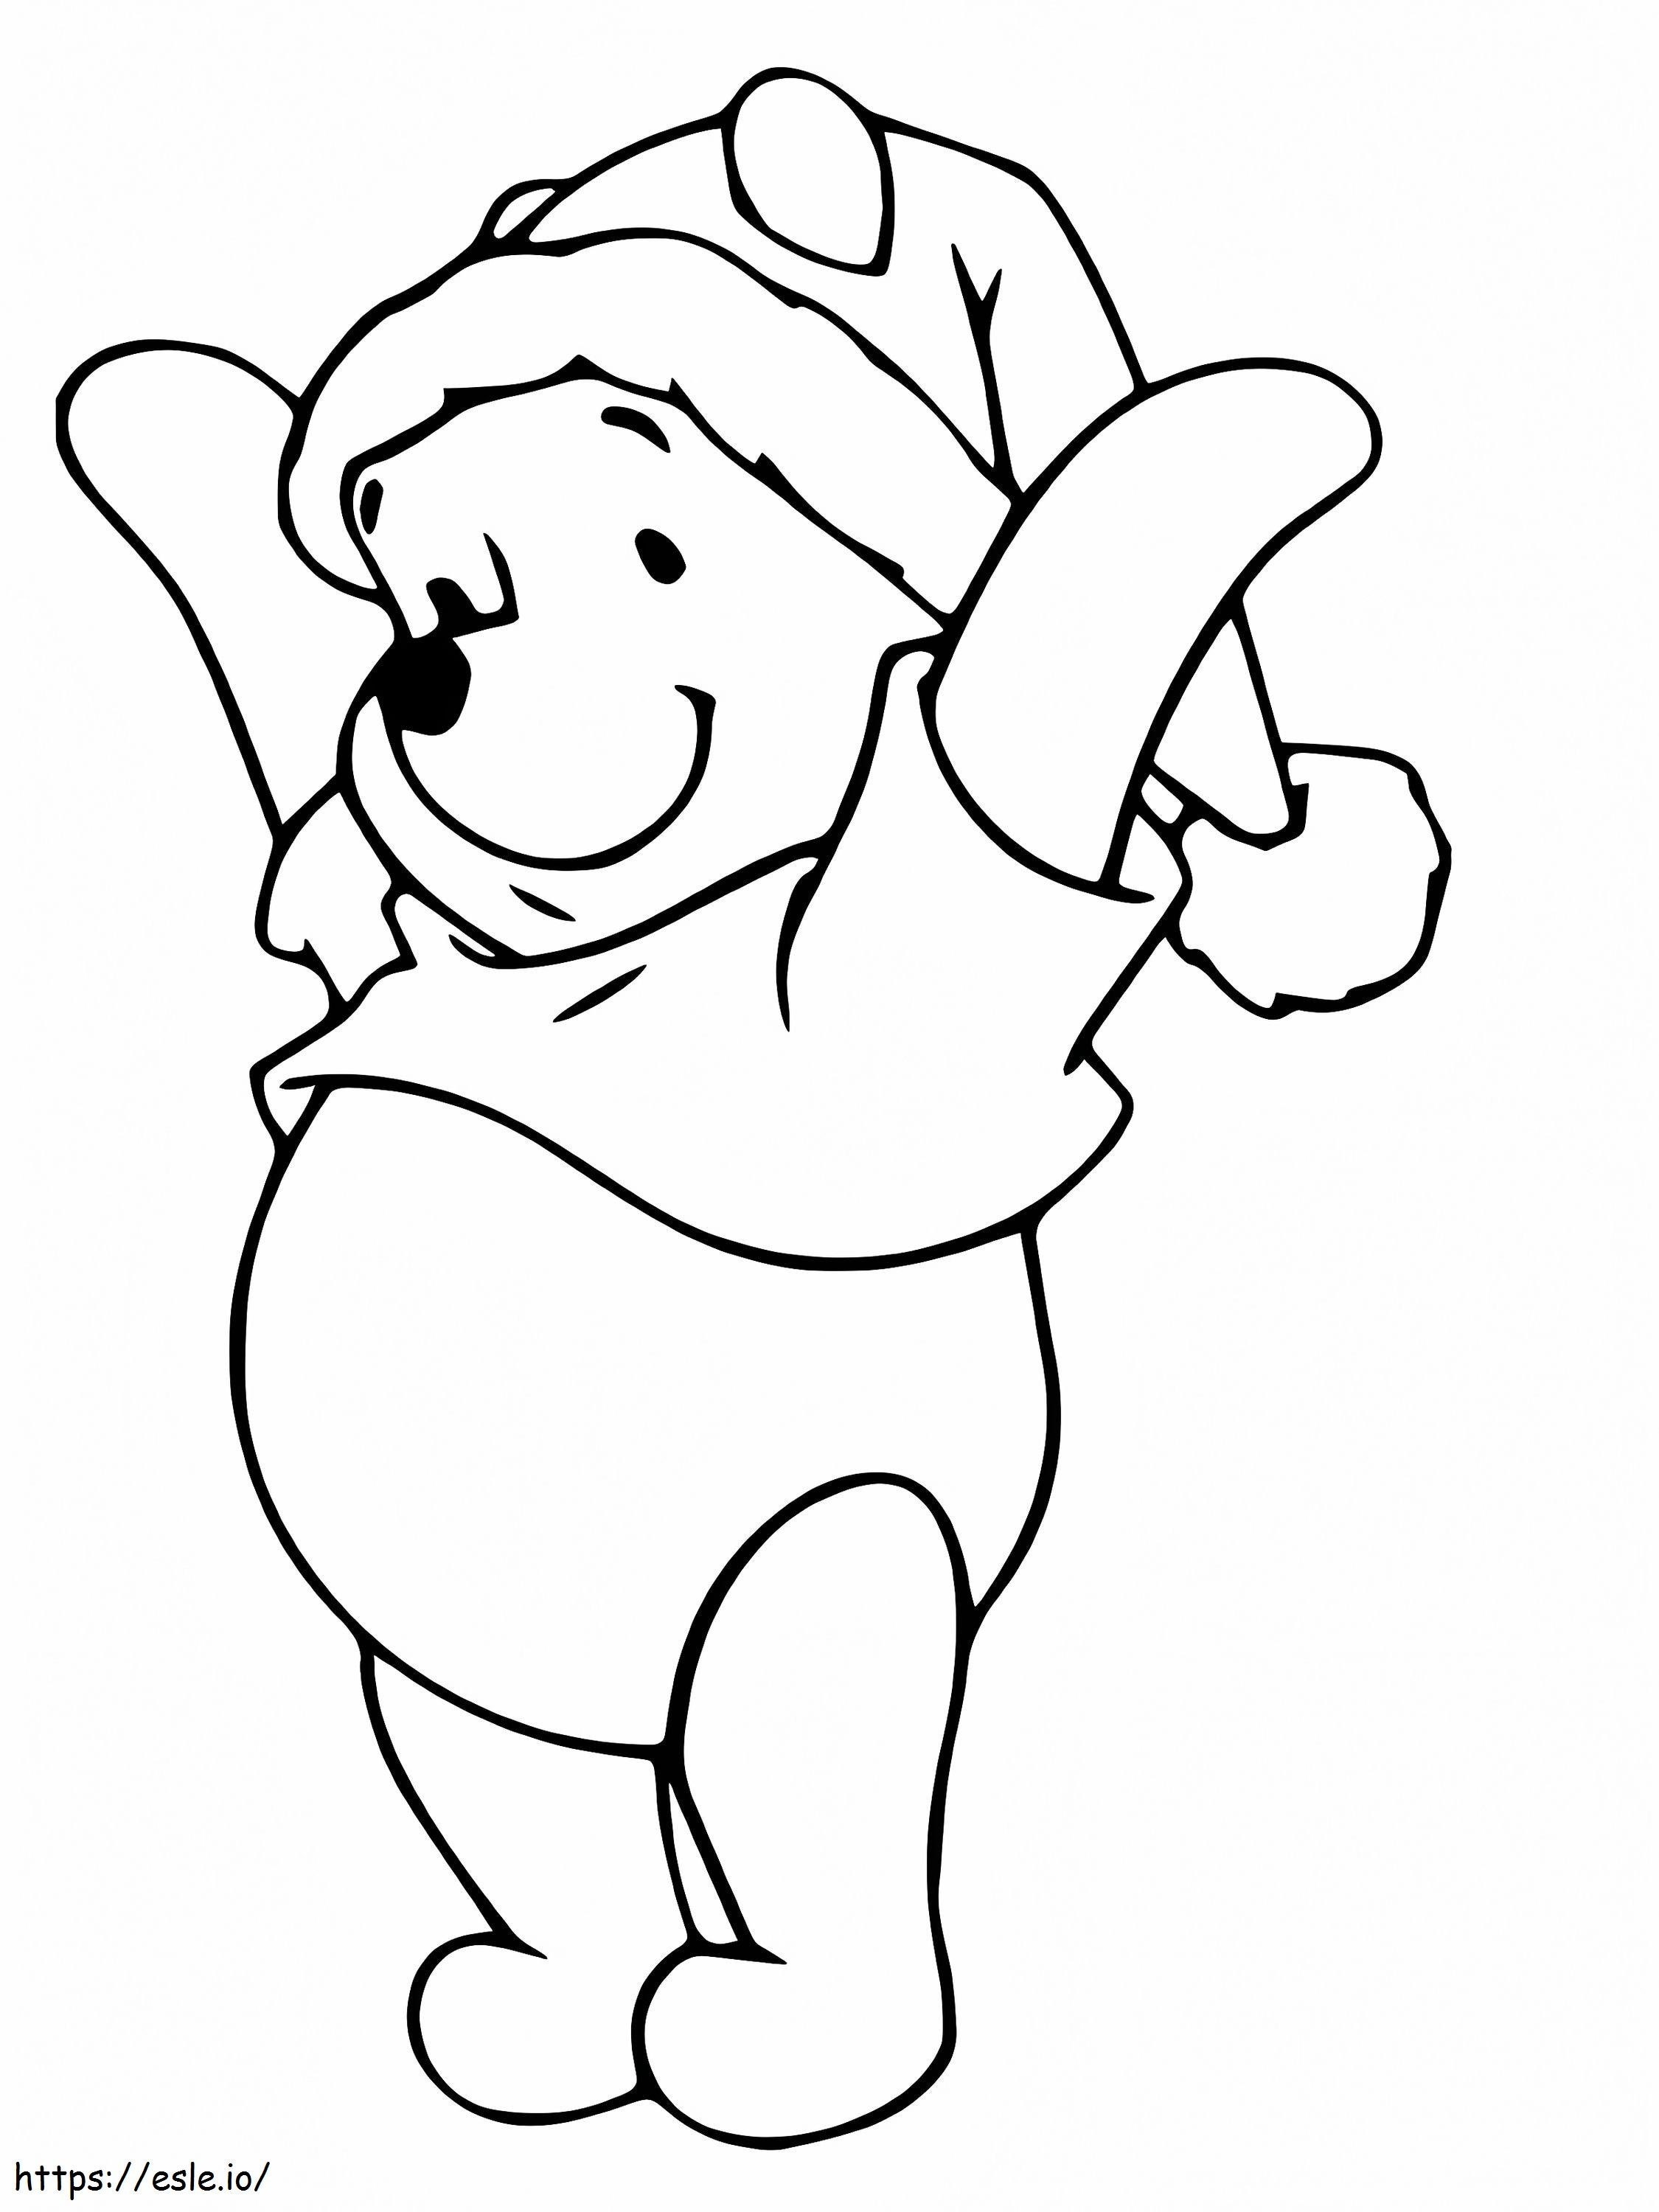 Dibujo para colorear de Navidad de Winnie The Pooh para colorear